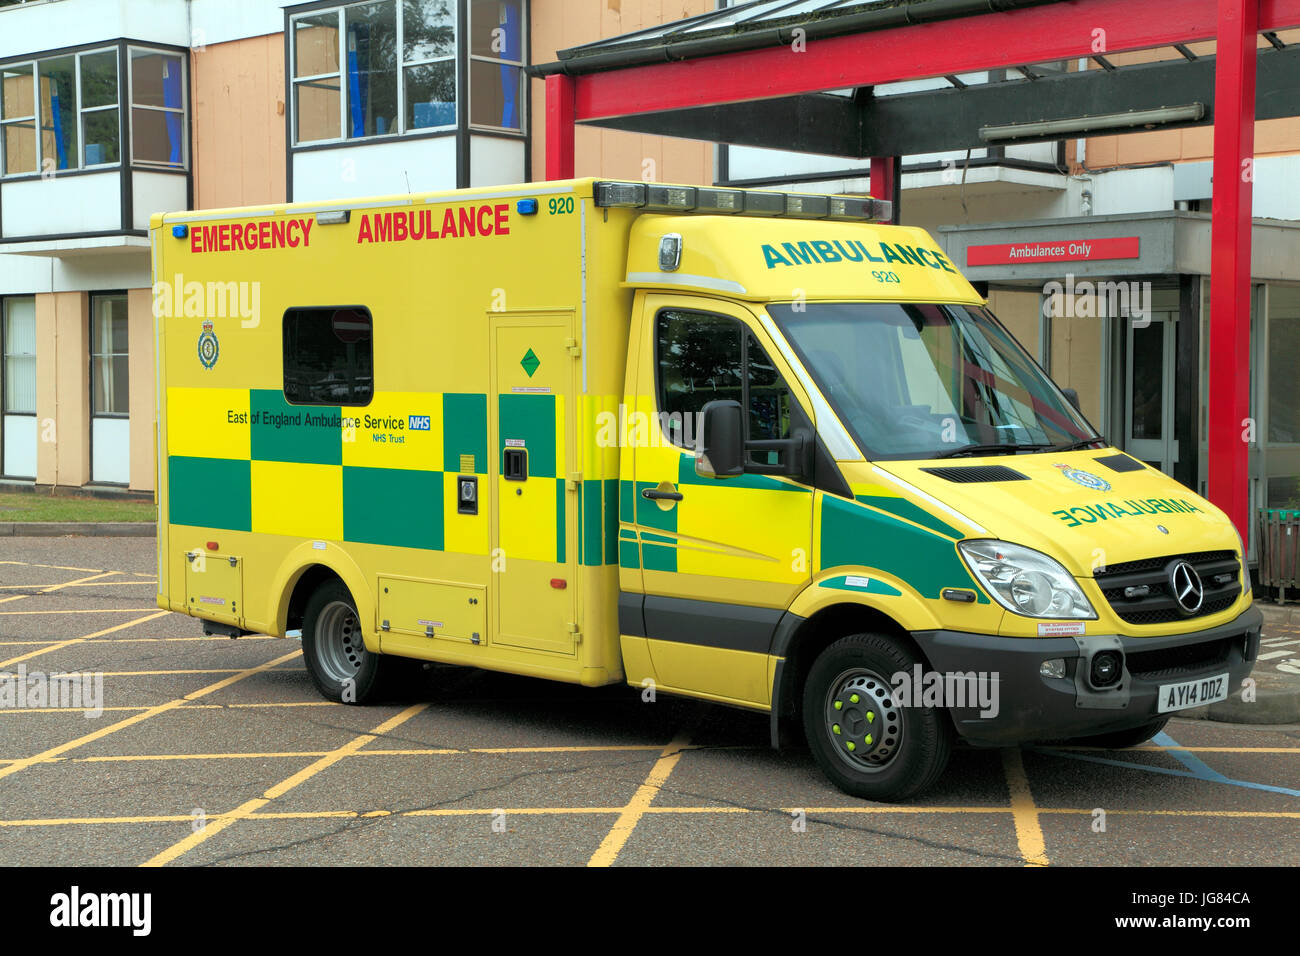 Queen Elizabeth Hospital, Kings Lynn, Est dell' Inghilterra ambulanza Emergenza, NHS, Norfolk, Inghilterra, Regno Unito Foto Stock